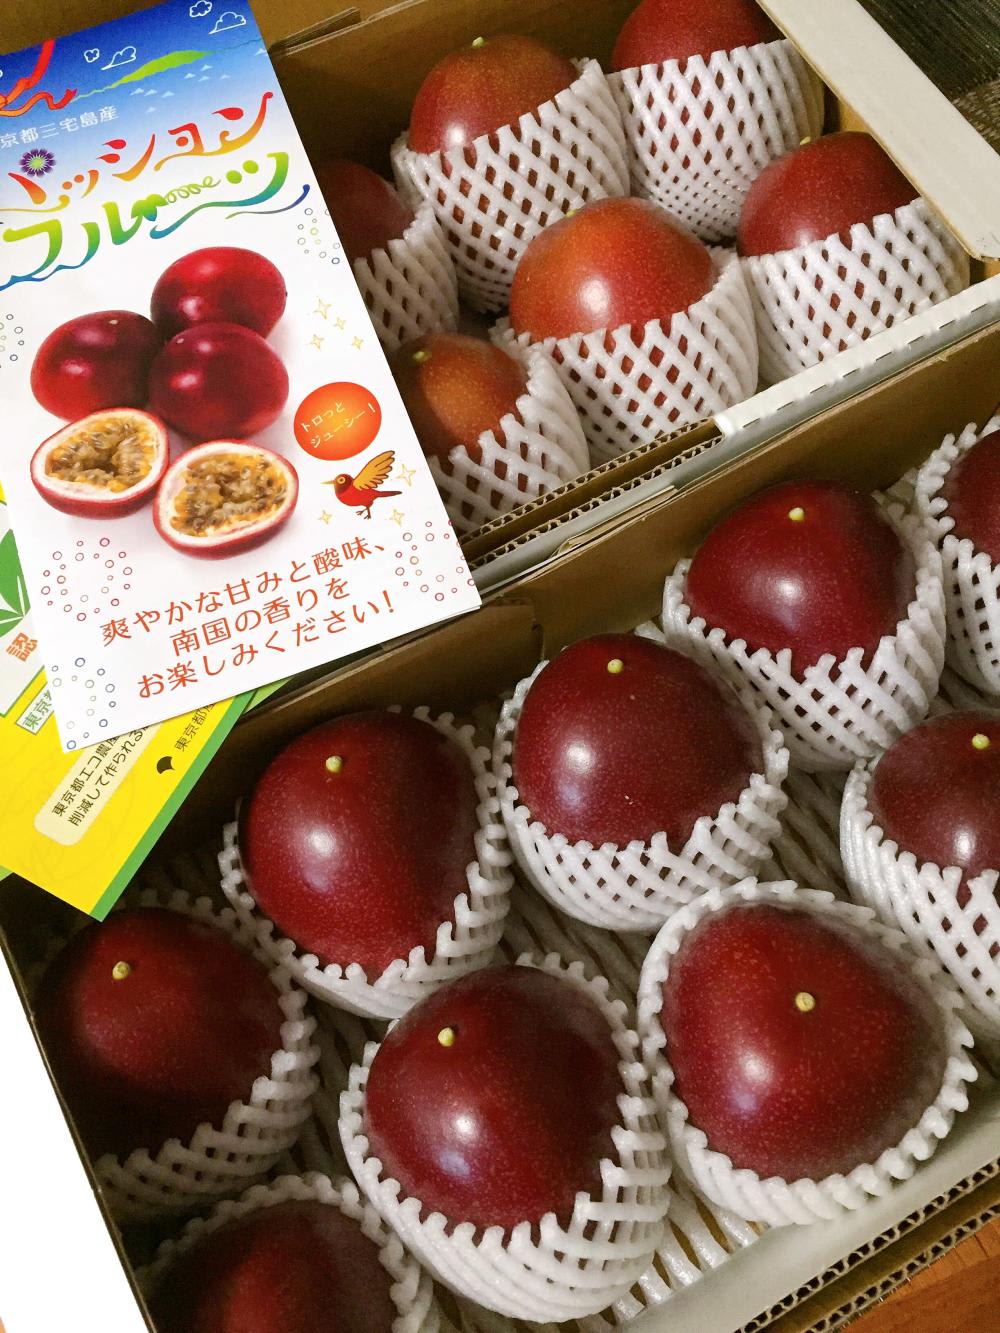 熊本県産ミニパッションフルーツ50個